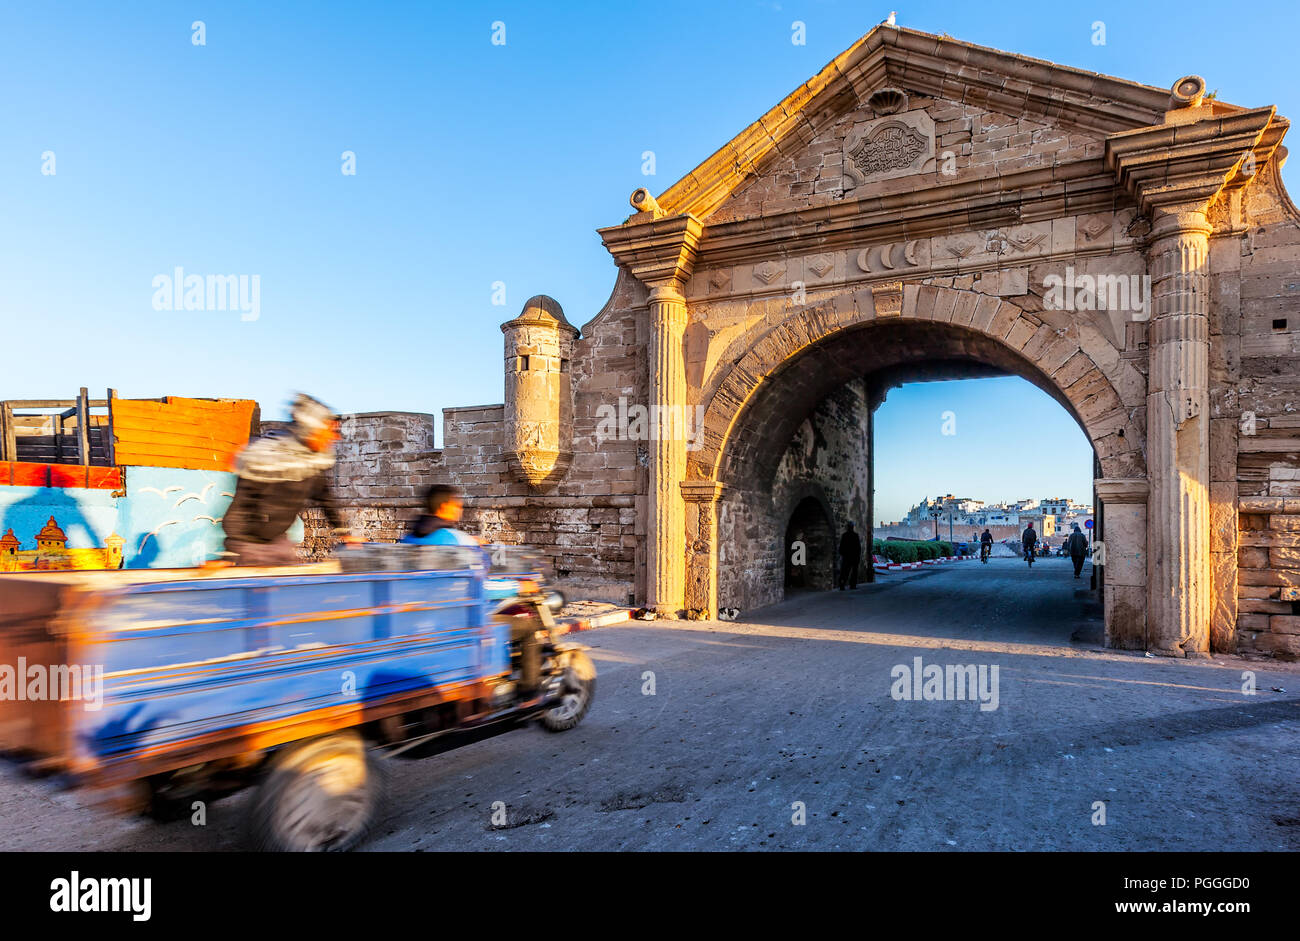 Marokko gateway zu Essaouuira. Beschleunigung Warenkorb mit Motion blur Laufwerke, die mit dem schönen gewölbten Öffnung der alten Befestigungsmauer der Stadt am Meer. Stockfoto